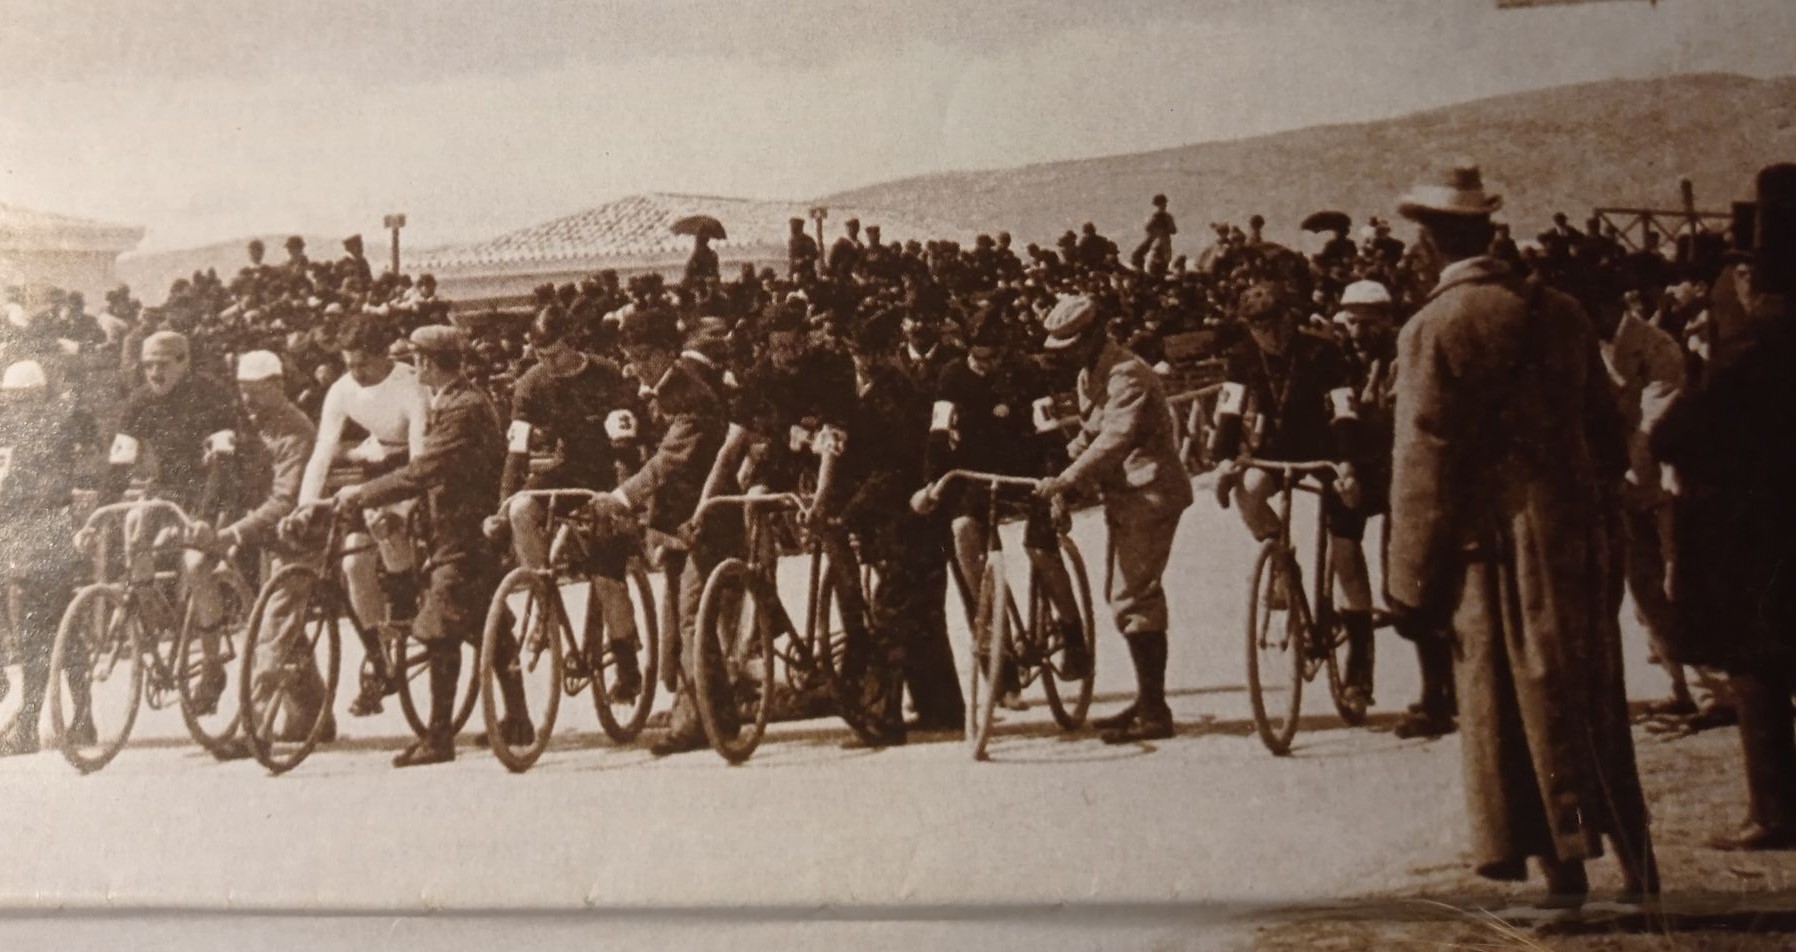 Το πρώτο ποδήλατο στην Αθήνα το 1881. Η κόντρα με τα άλογα και γιατί το χαρακτήρισαν “χορηγό ηδονής”. “Το ποδήλατον κολακεύει τον ανθρώπινον εγωϊσμόν”, έγραφε ο τύπος